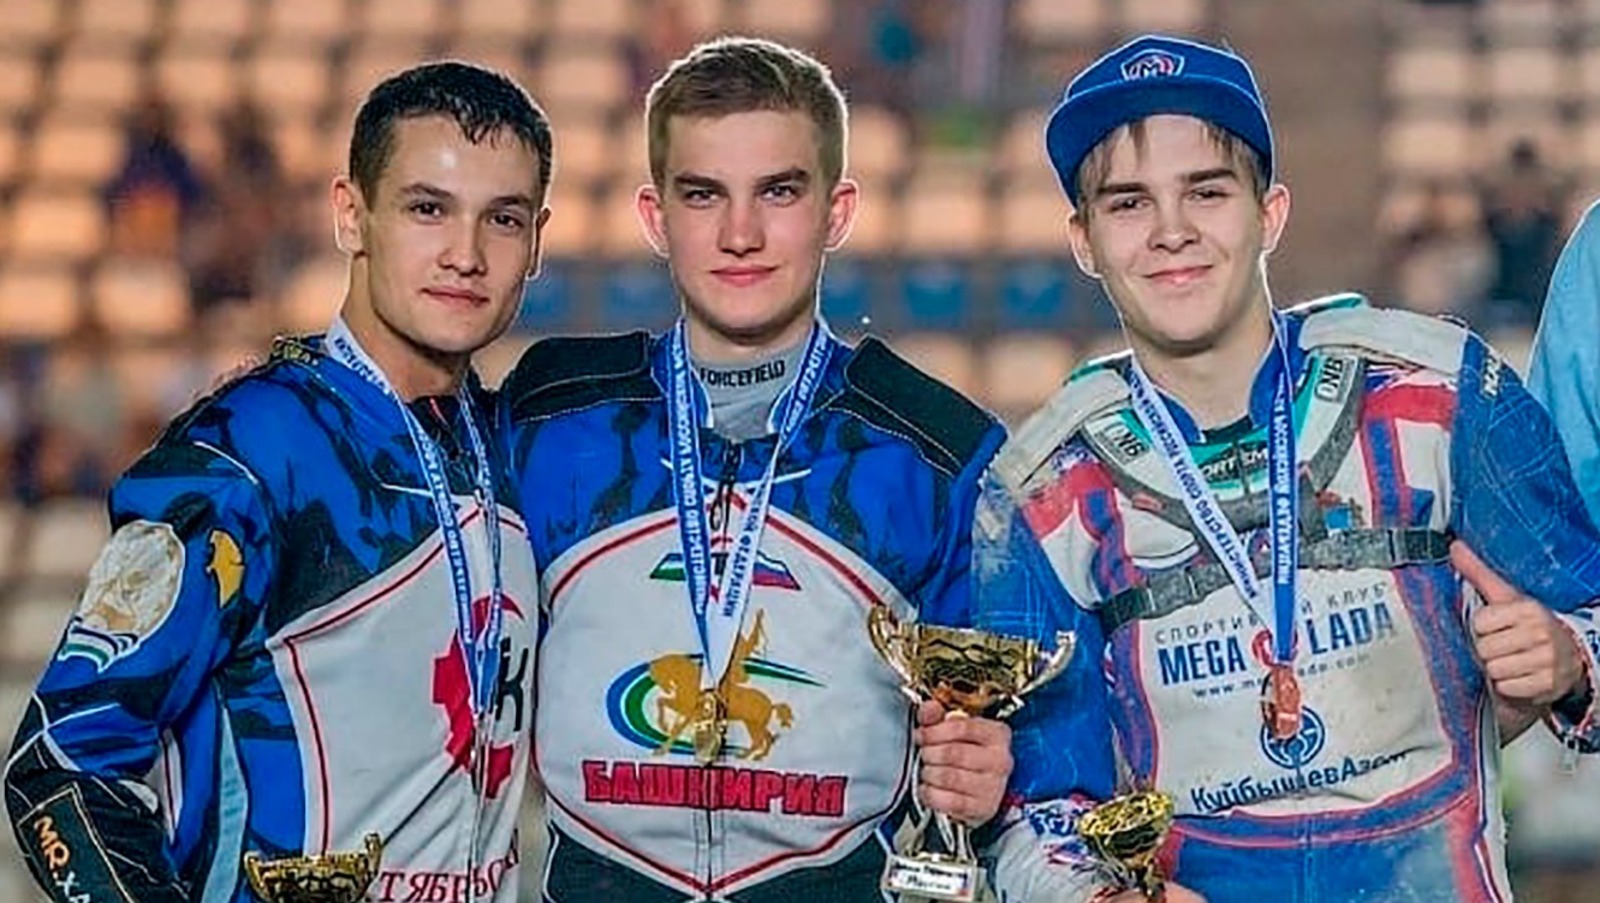 Мотогонщики Башкирии завоевали три медали на первенствах России